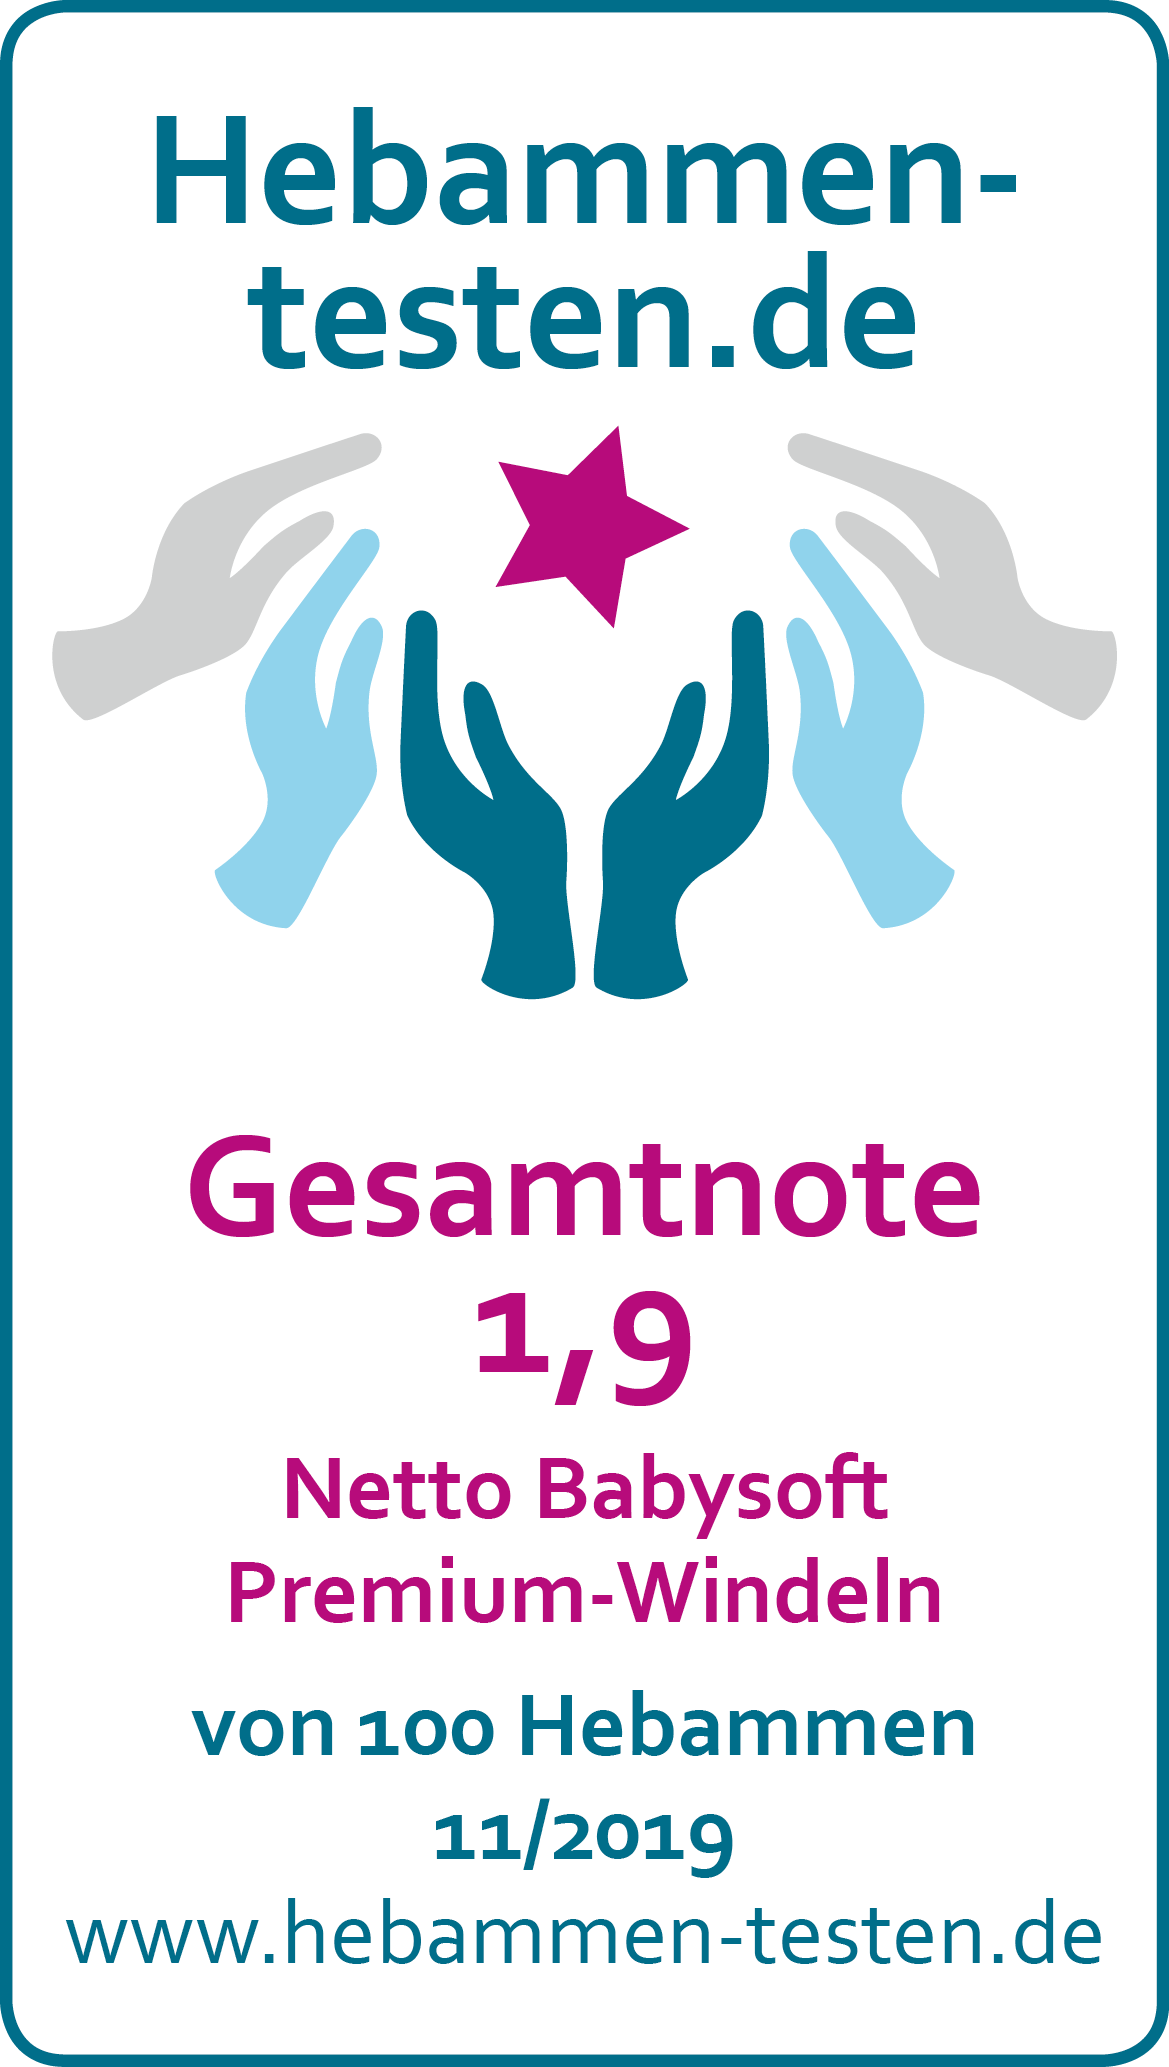 Netto Babysoft Premium-Windeln Siegel 2019